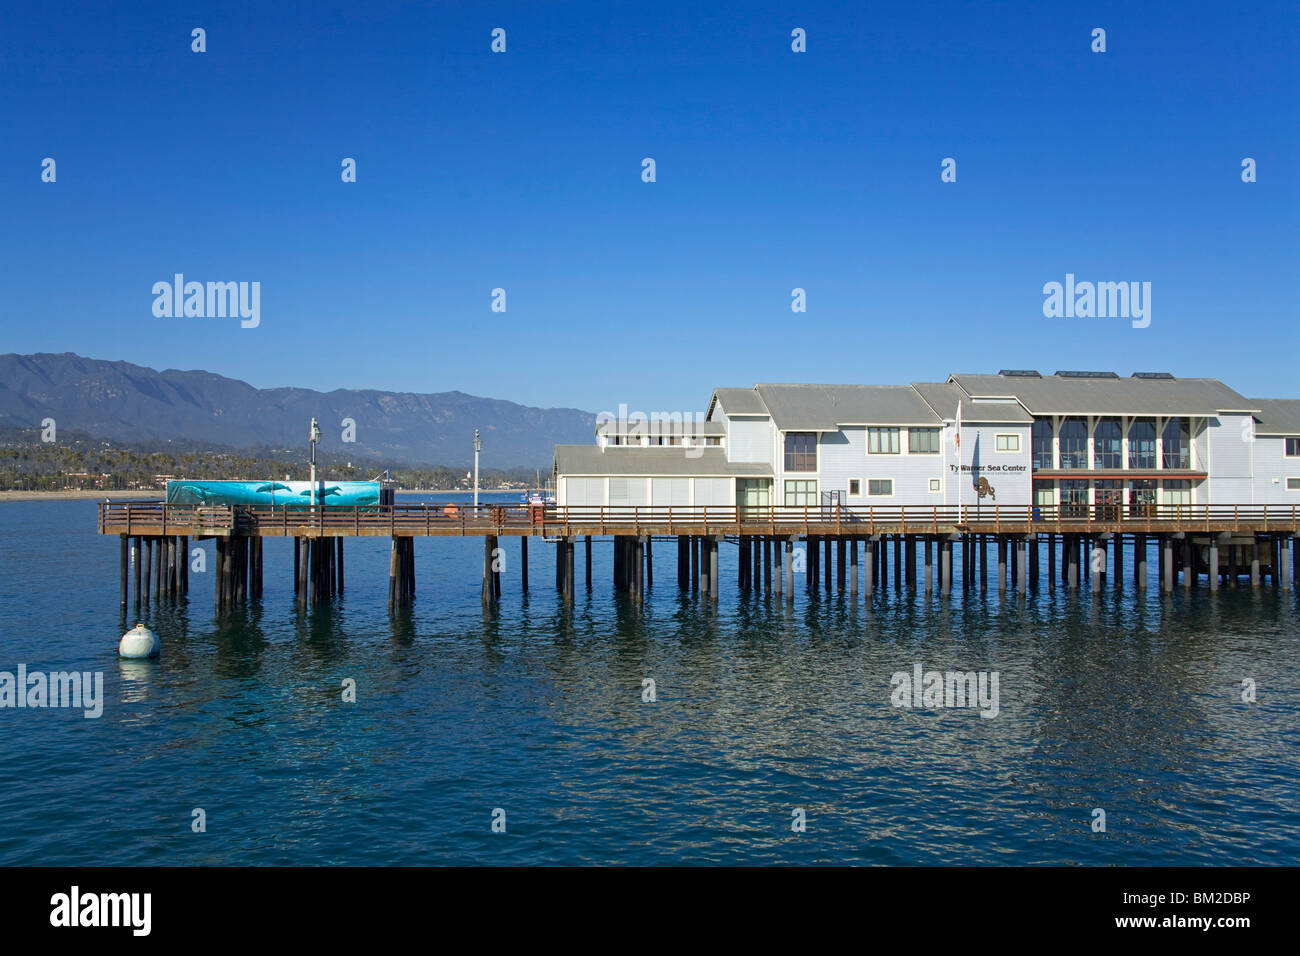 Centre de la mer de Stearns Wharf, port de Santa Barbara, Californie, États-Unis Banque D'Images